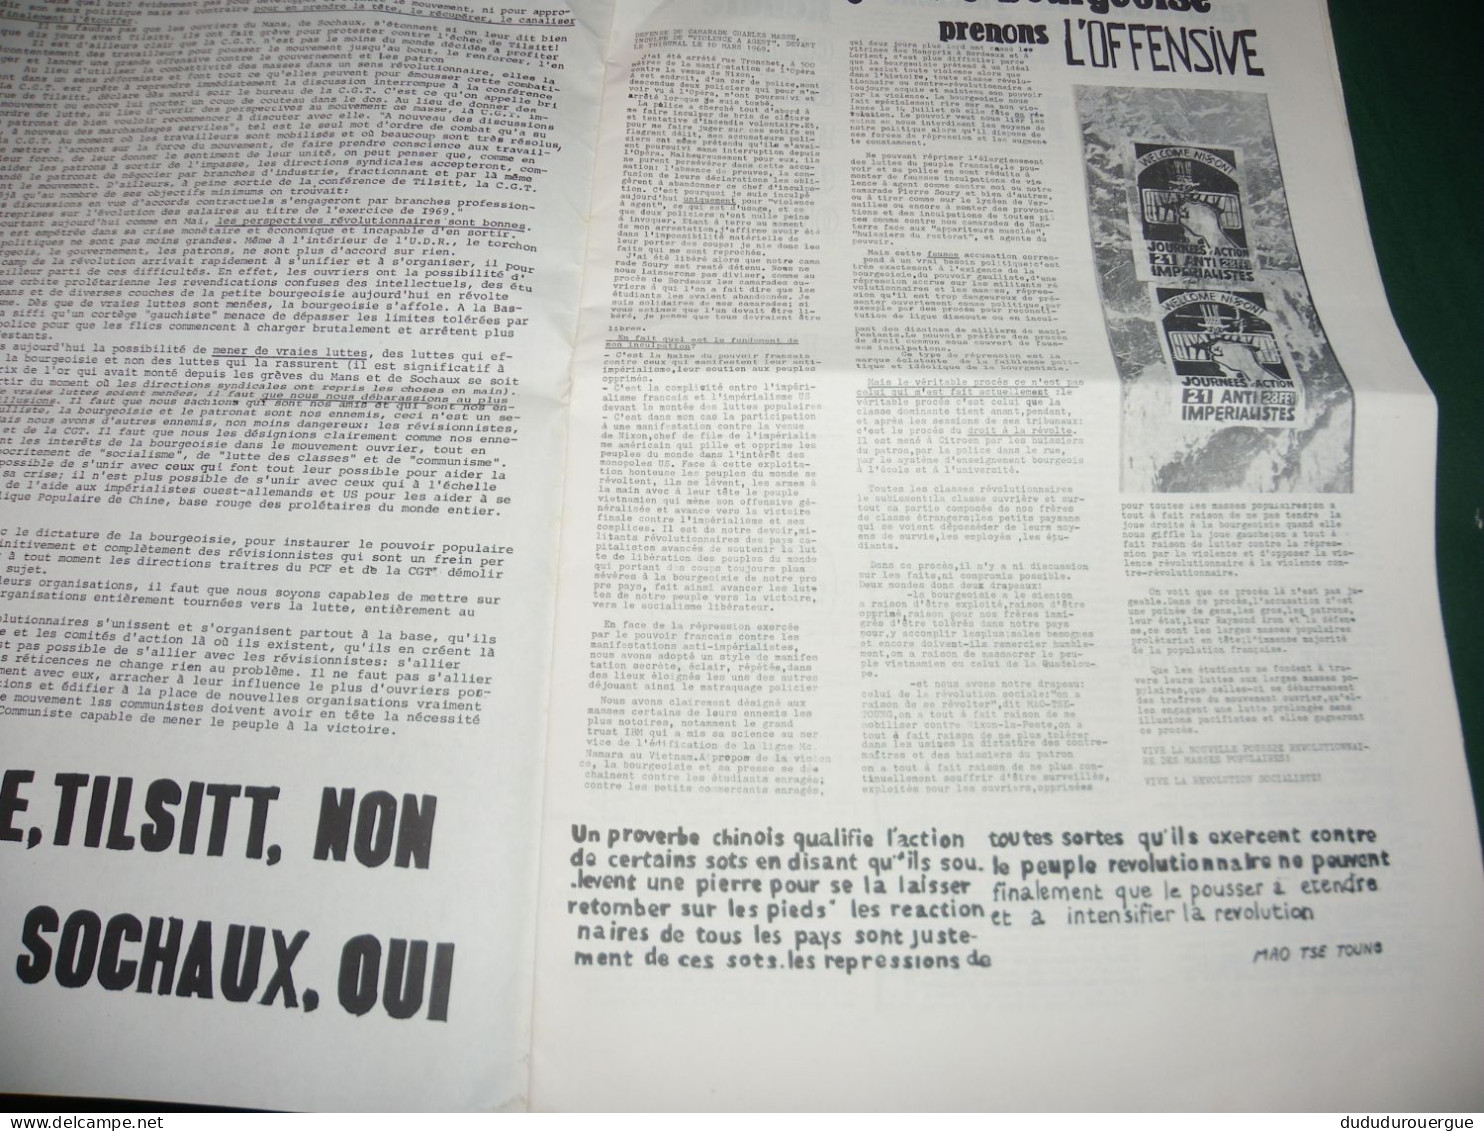 EVENEMENTS  1968 : " VIVE LE COMMUNISME " JOURNAL COMMUNISTE MARXISTE LENINISTE LE N ° 3 NANTERRE - 1950 - Nu